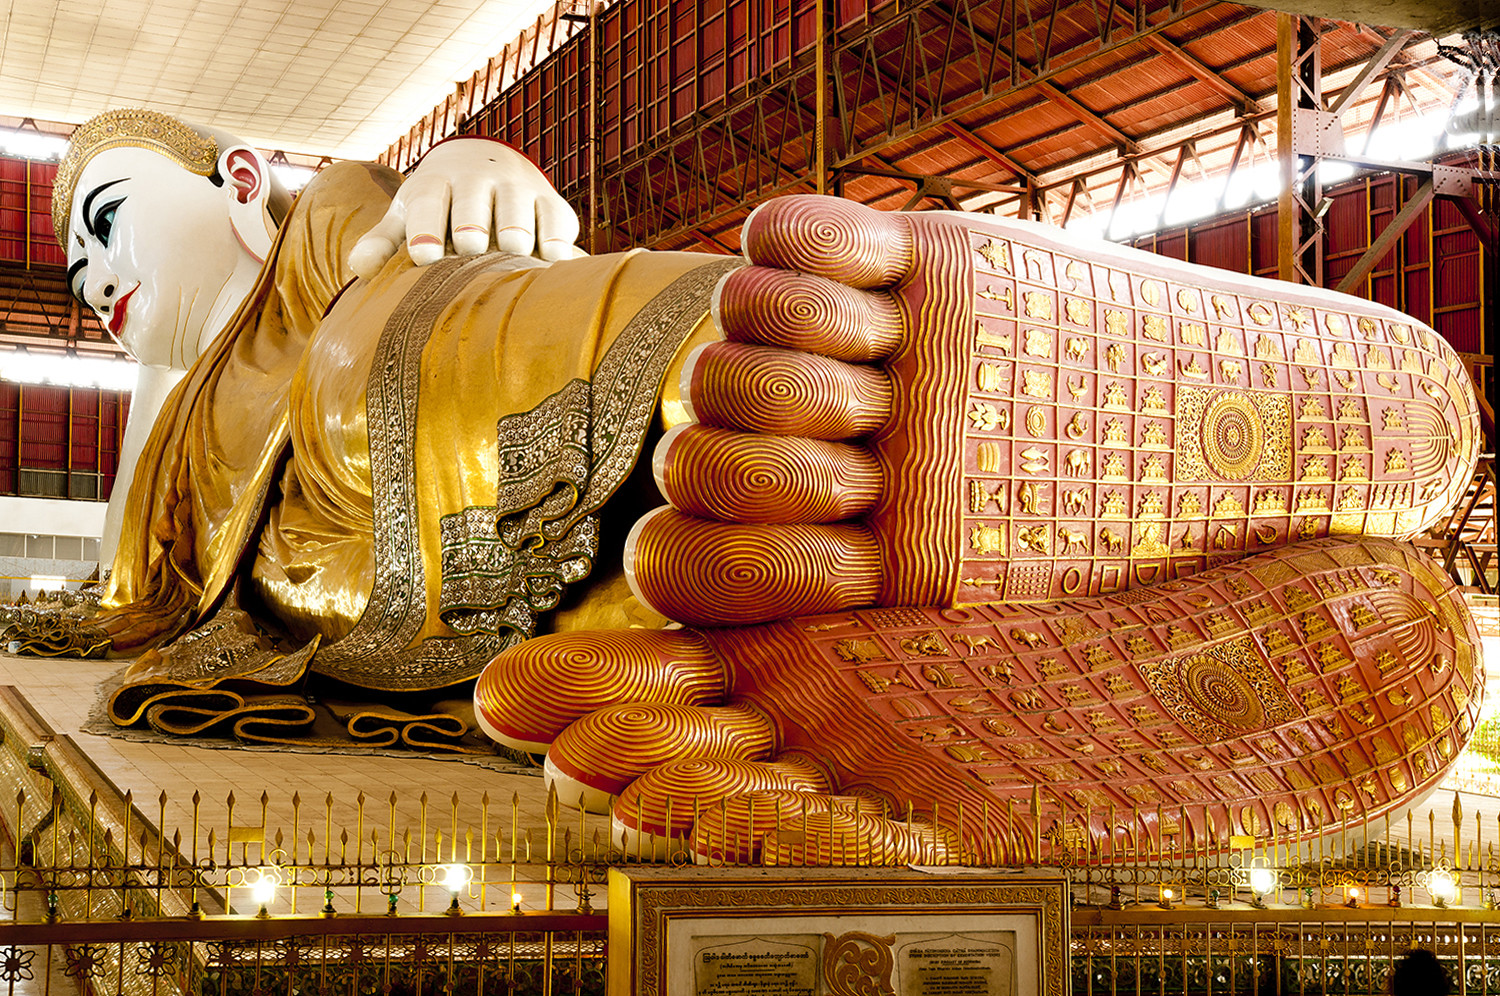 Melodieus Redenaar Maak een bed Heel grote liggende Boeddha in Yangon | Columbus Travel